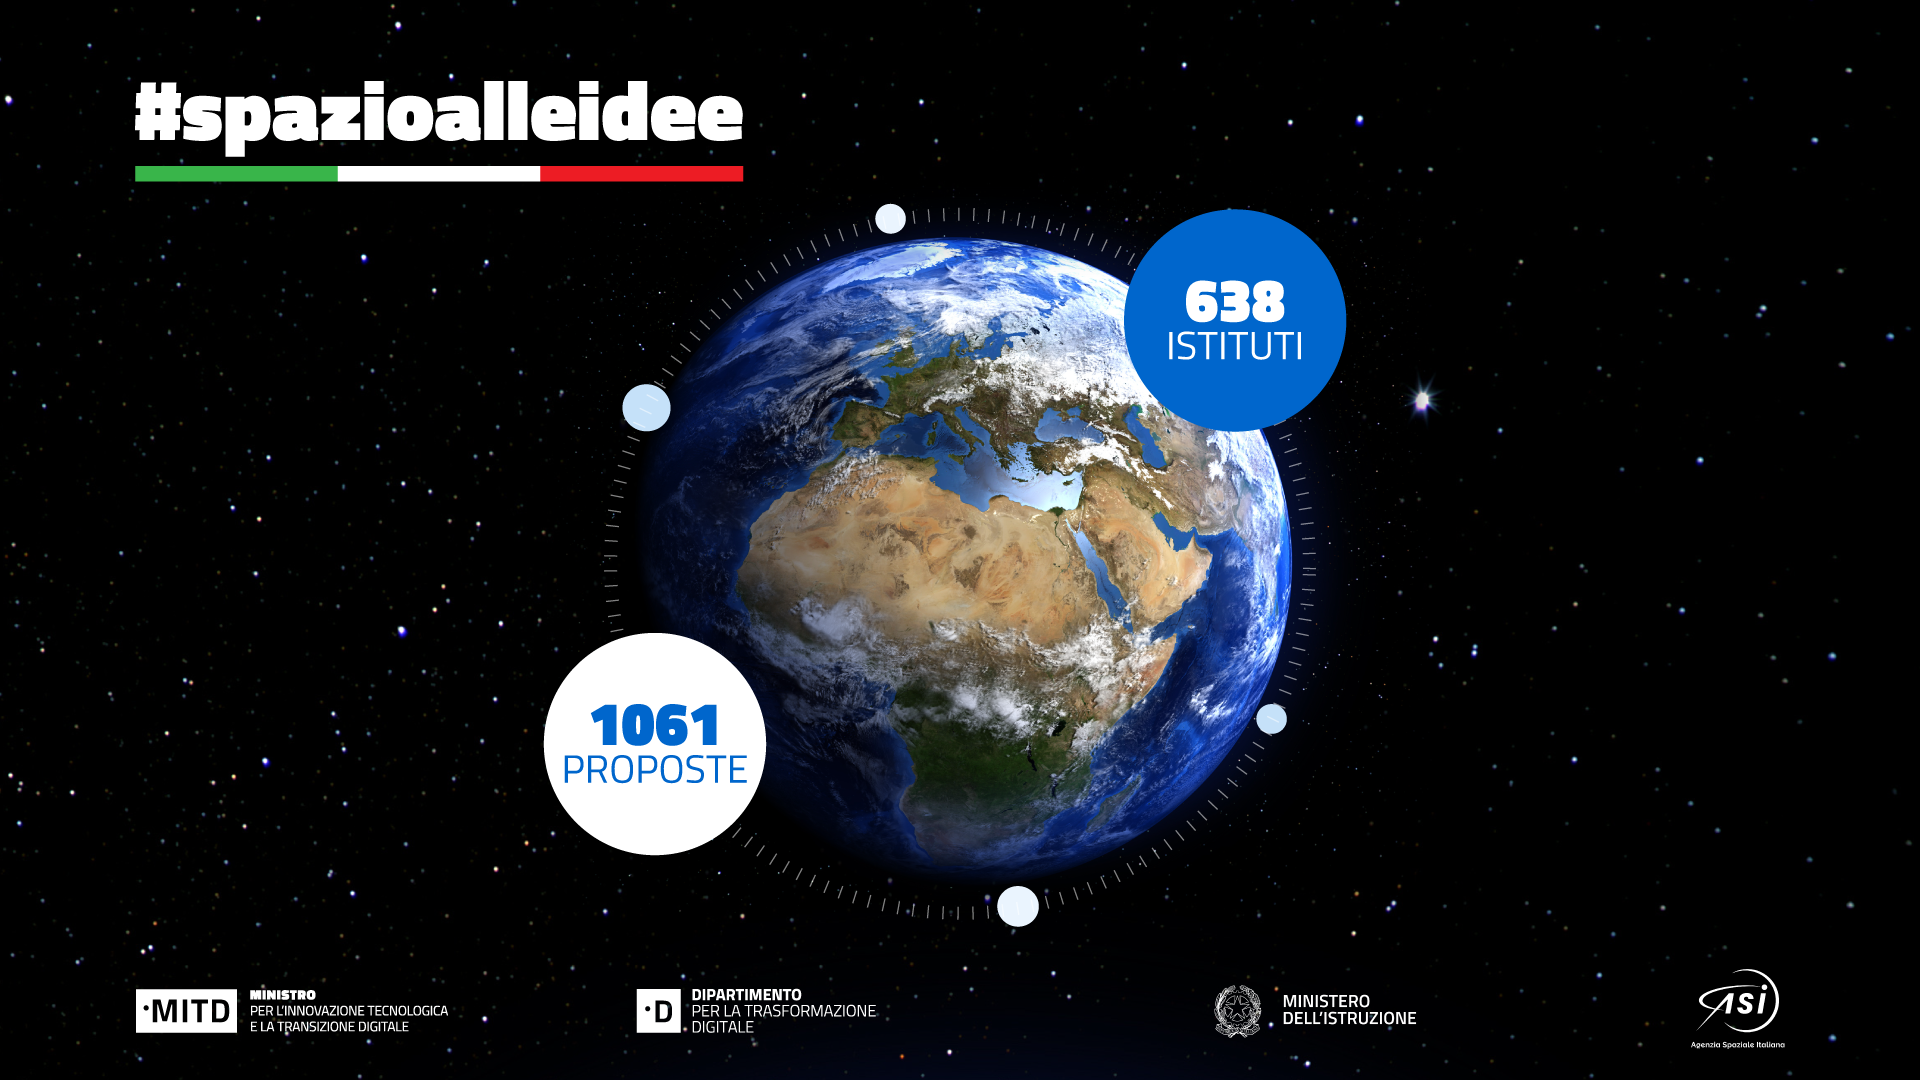 ASI - “Spazio alle idee”: oltre 1000 proposte per il nome della futura costellazione satellitare italiana di Osservazione della Terra